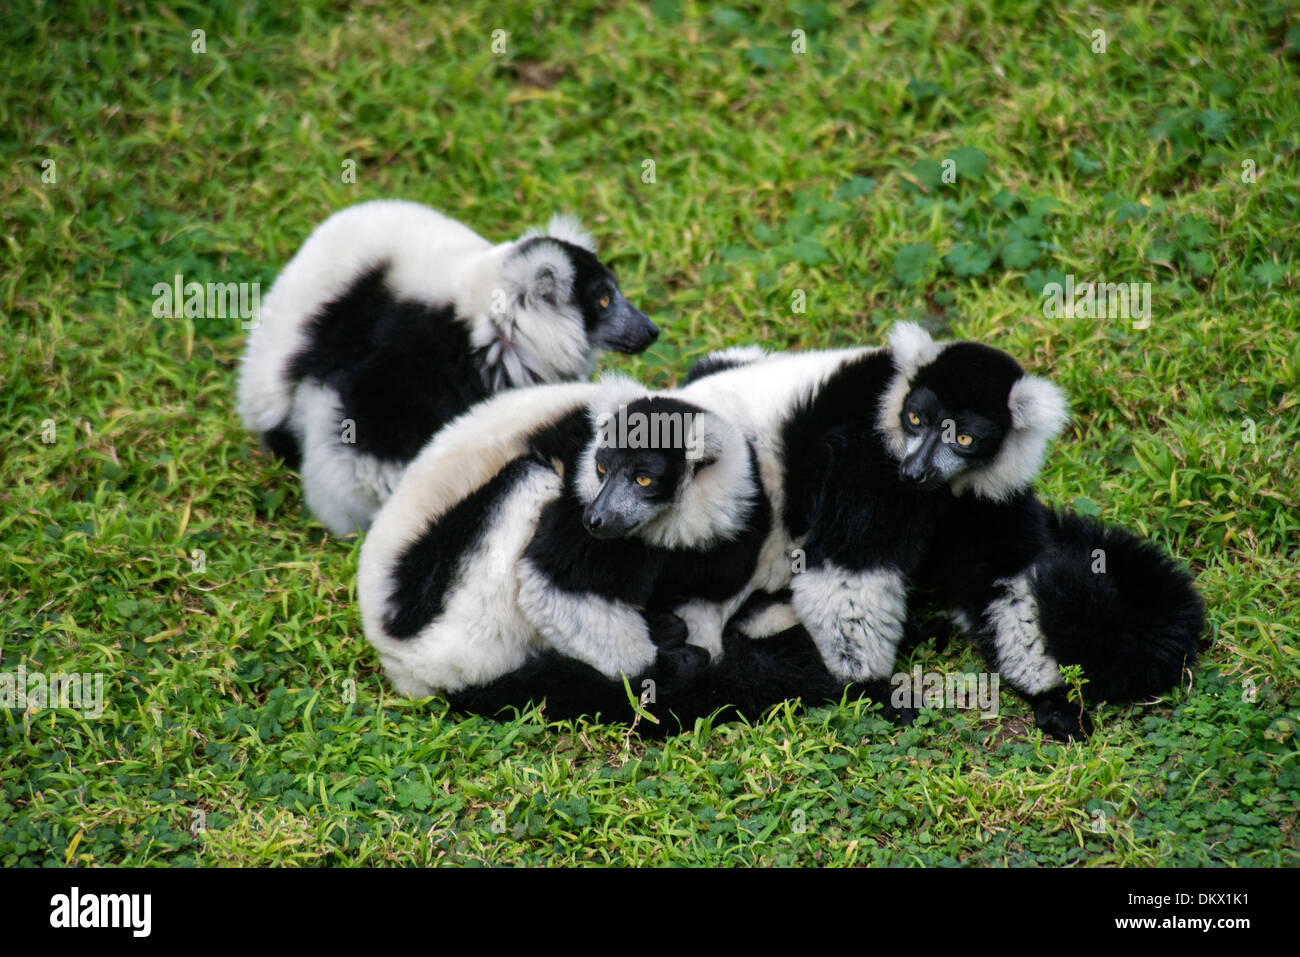 Animal Blanco Y Negro Fotos e Imágenes de stock - Alamy